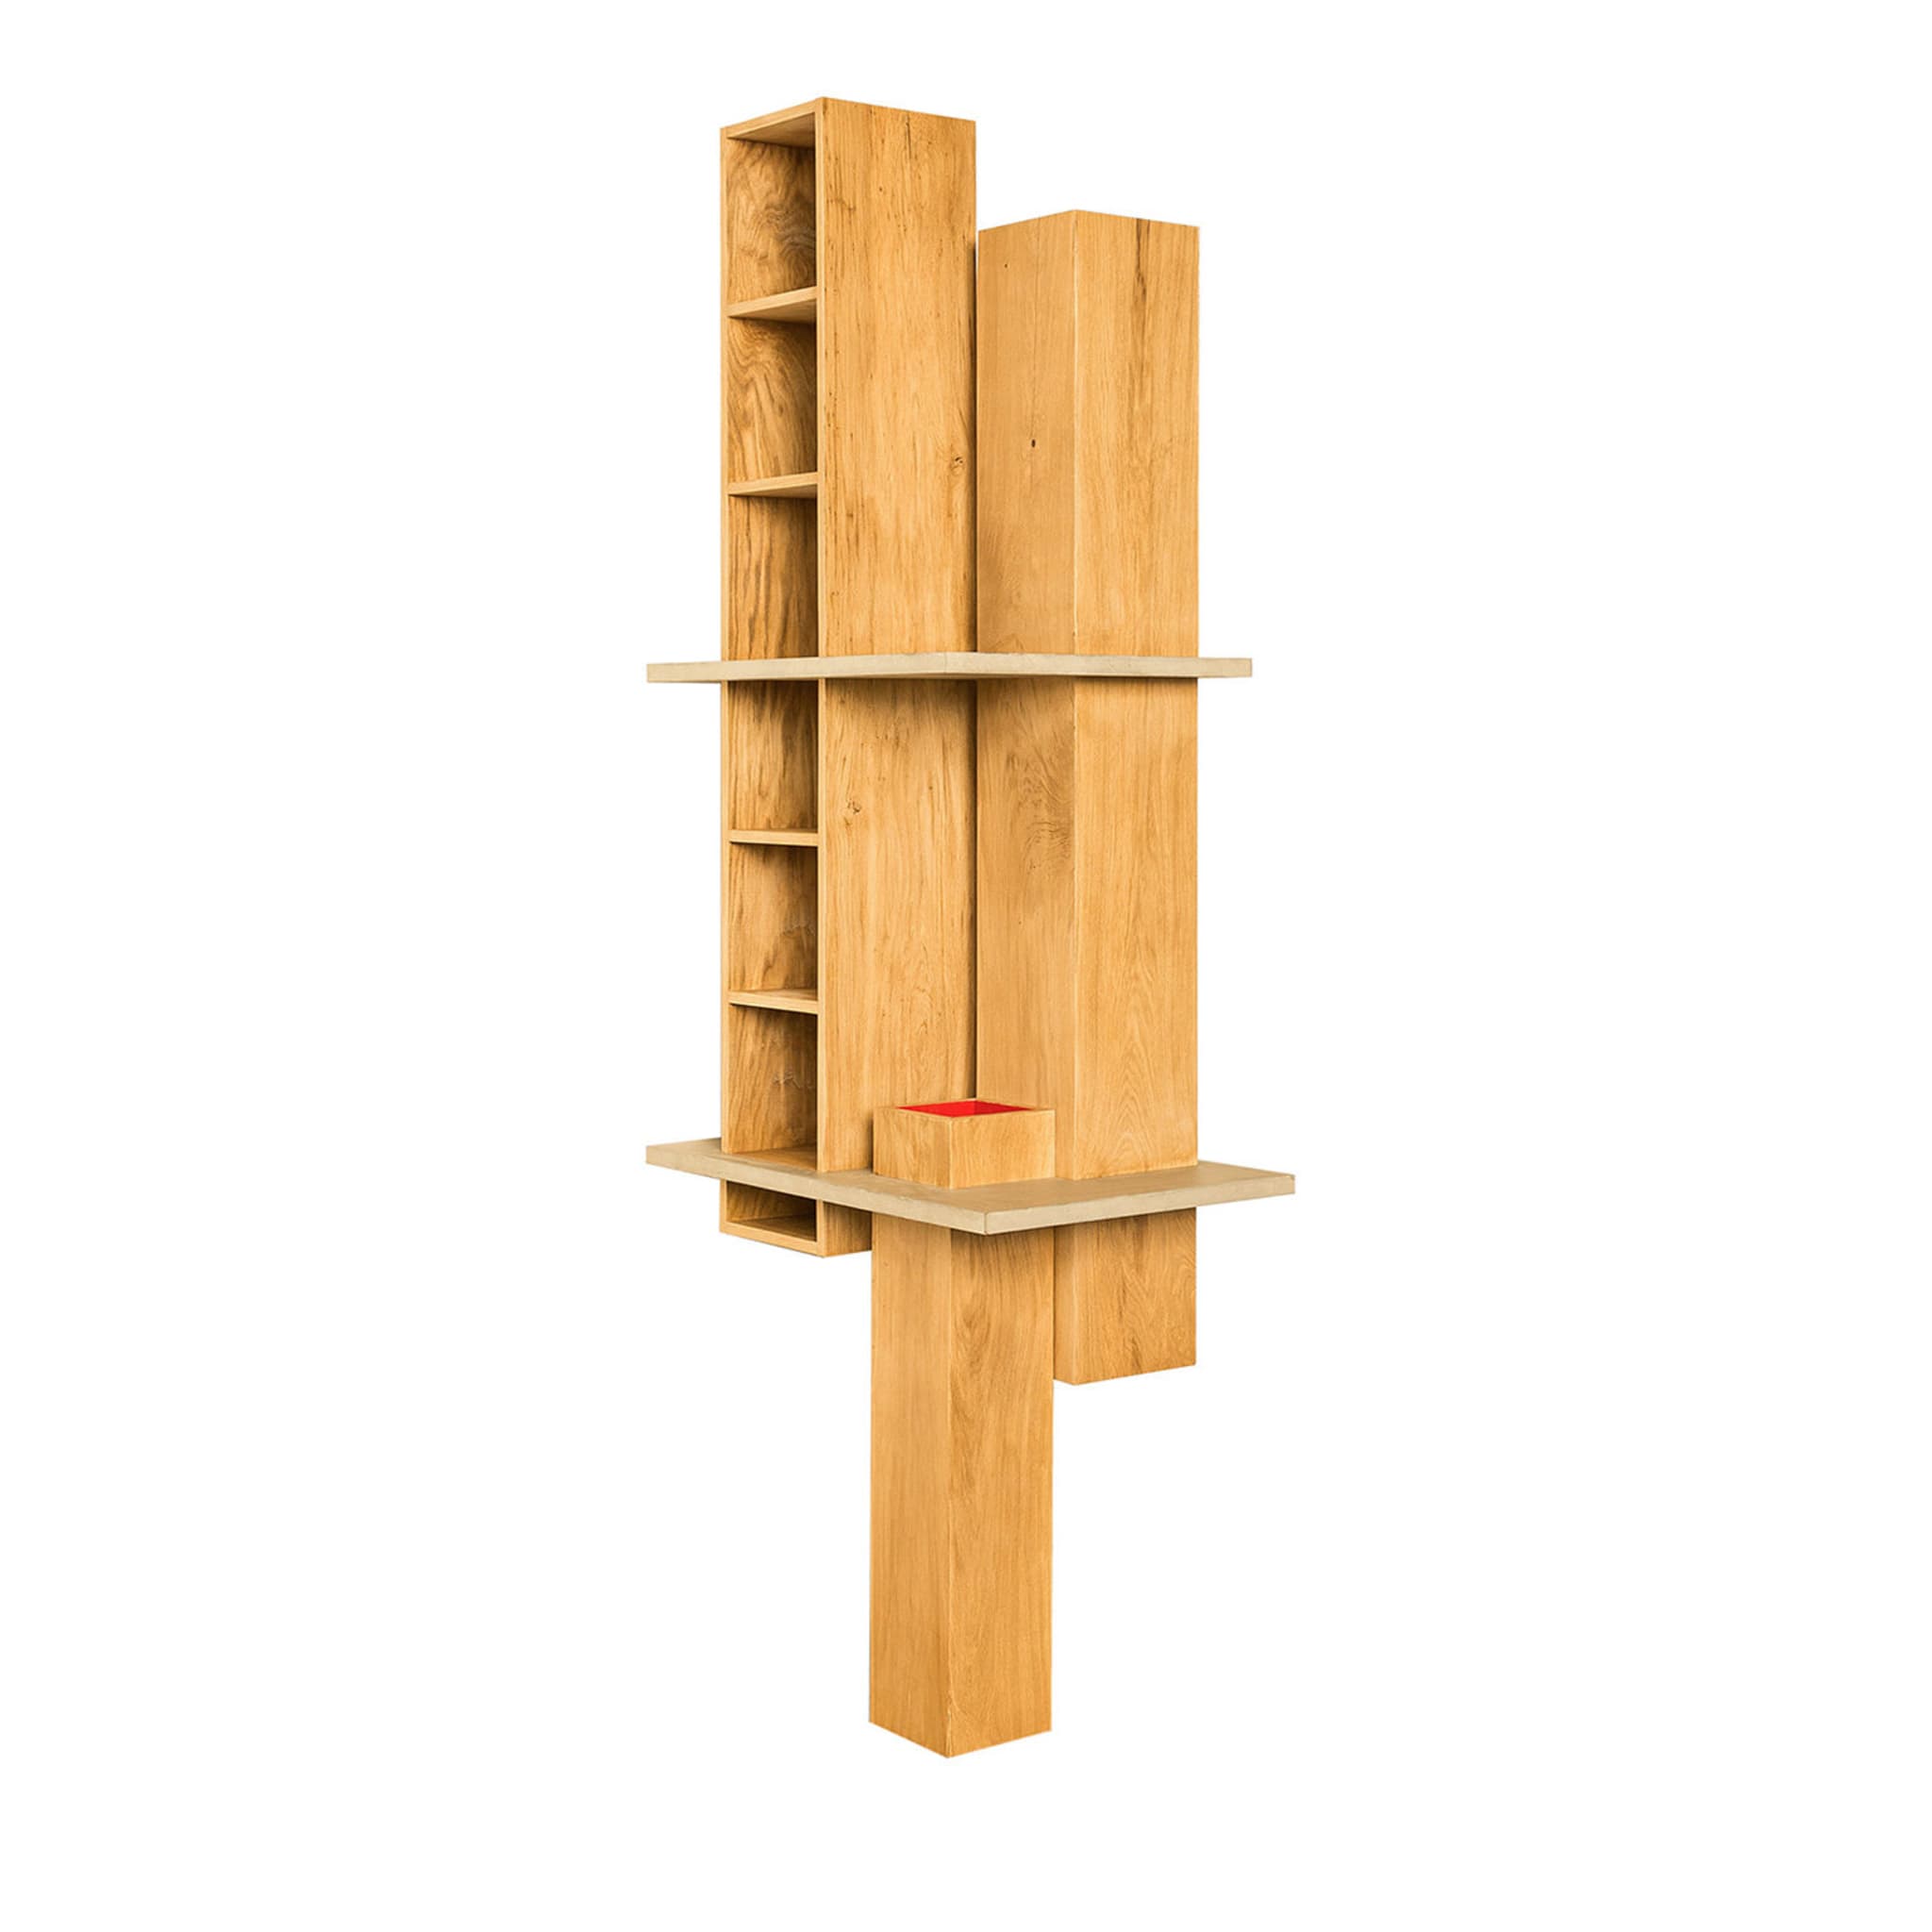 GM8 Oak Bookshelf by Giacomo Moor - Post Design - Vista principal